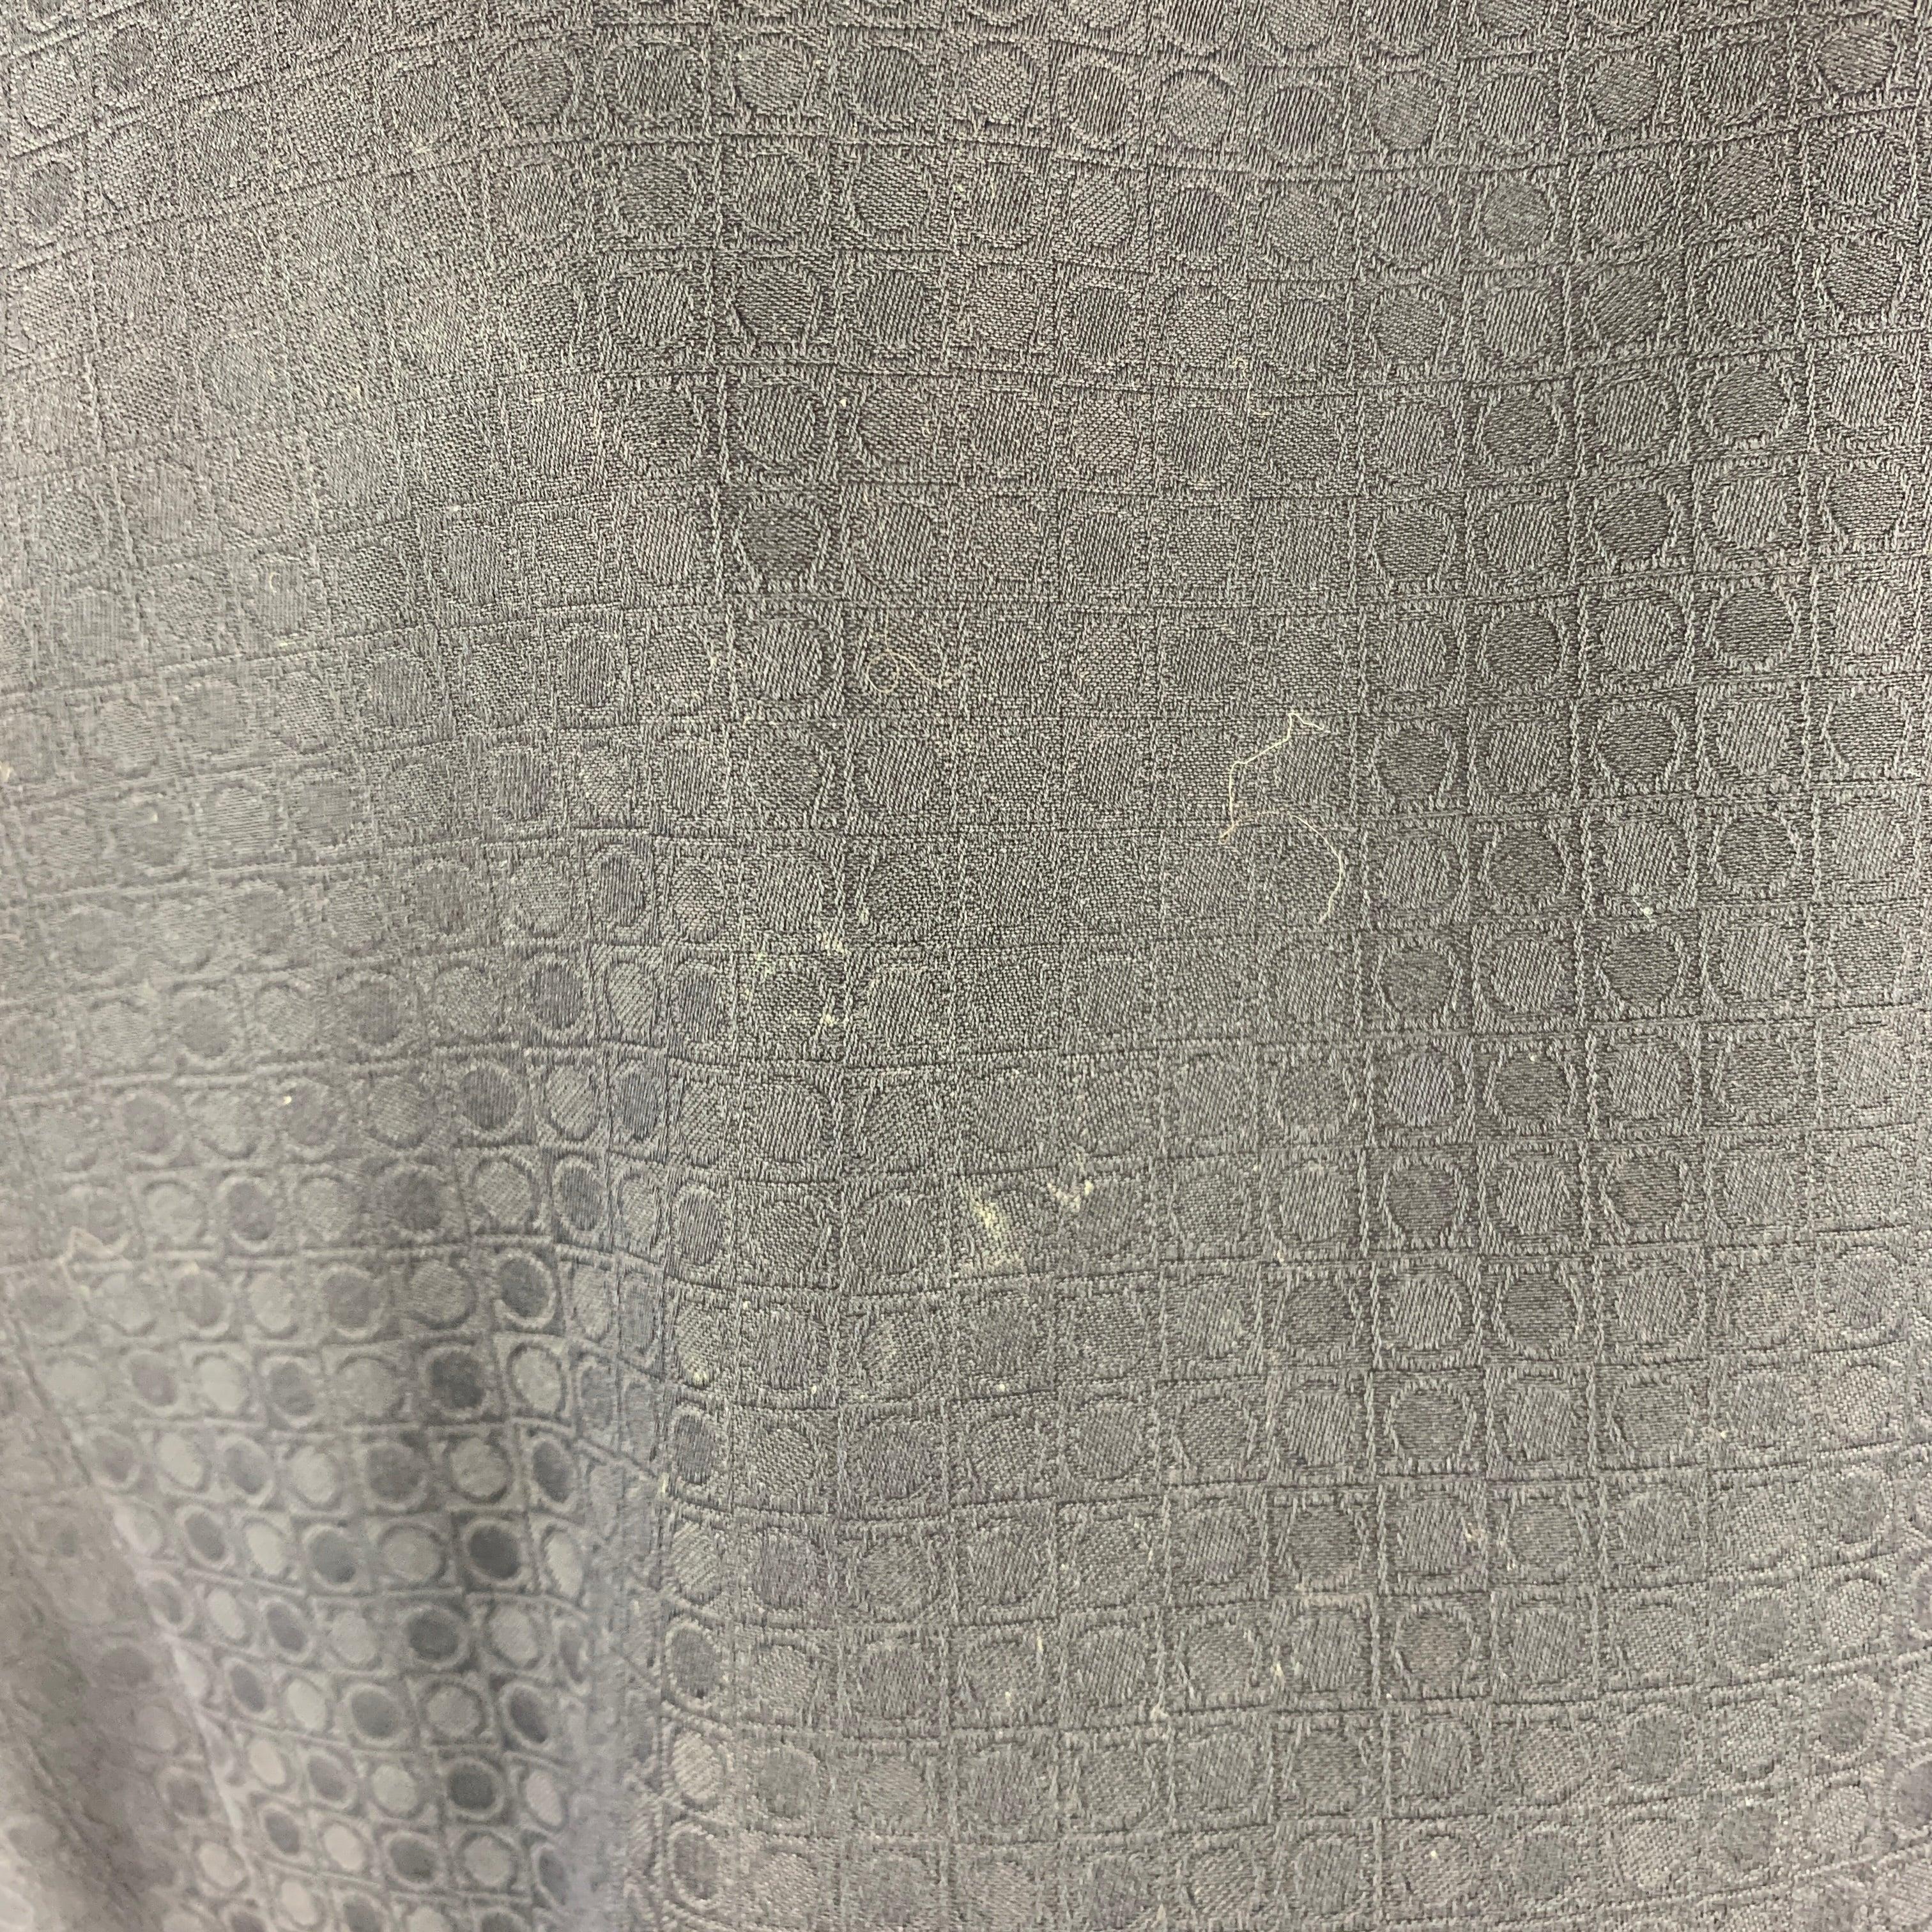 SALVATORE FERRAGAMO Size L Navy Dots Cotton Button Up Long Sleeve Shirt For Sale 1